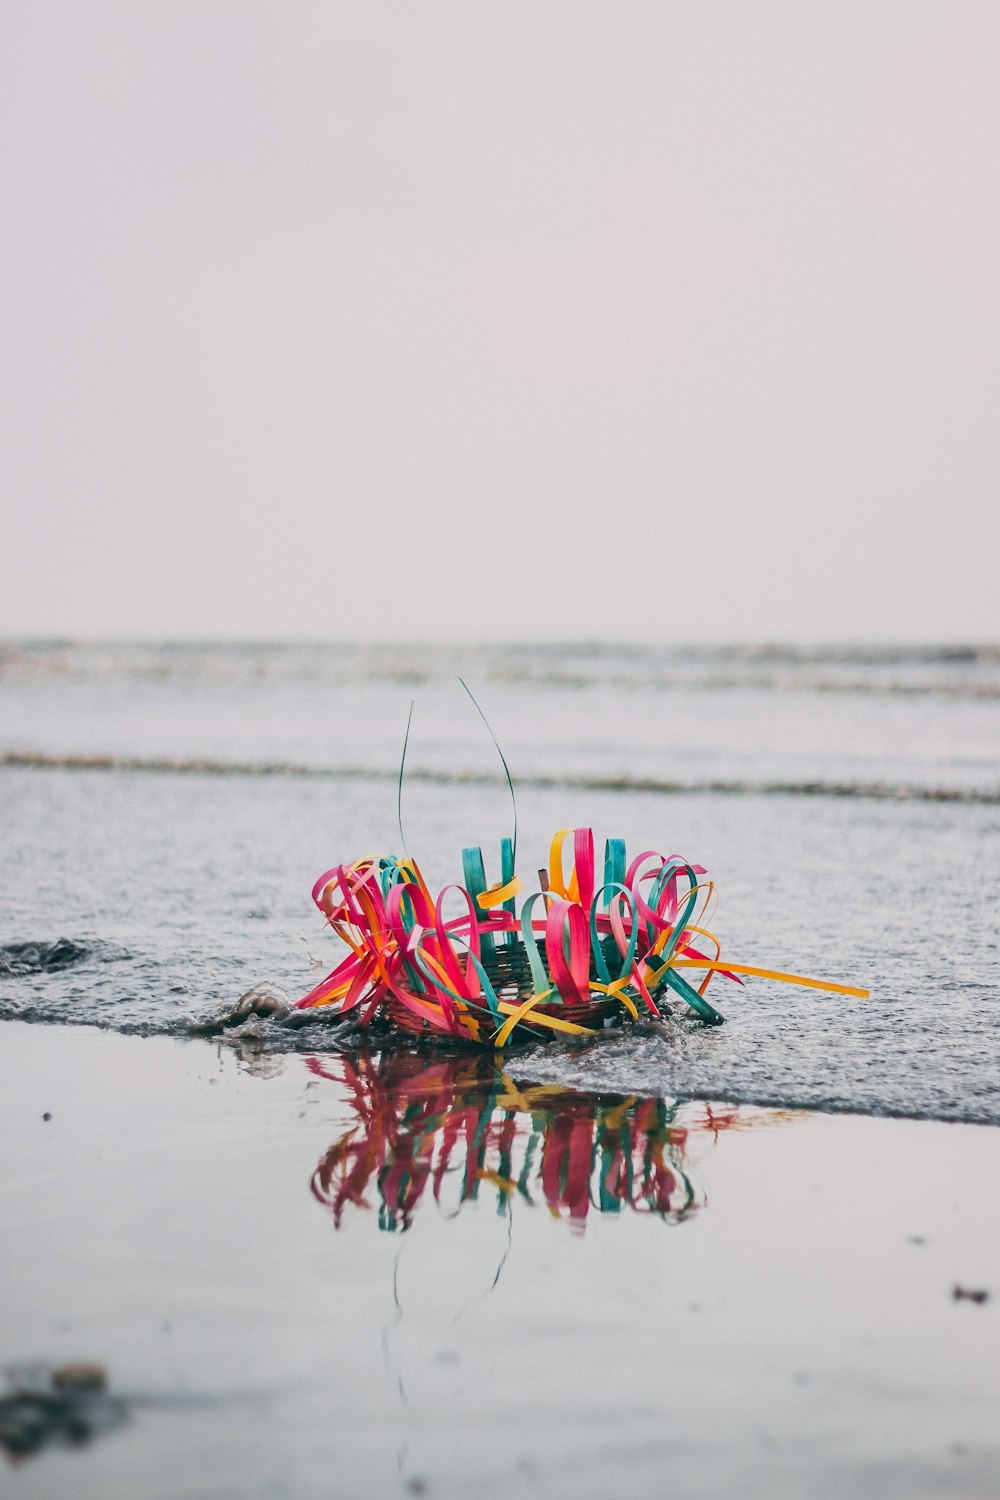 Foto a colori selettiva di un cesto multicolore sulla riva